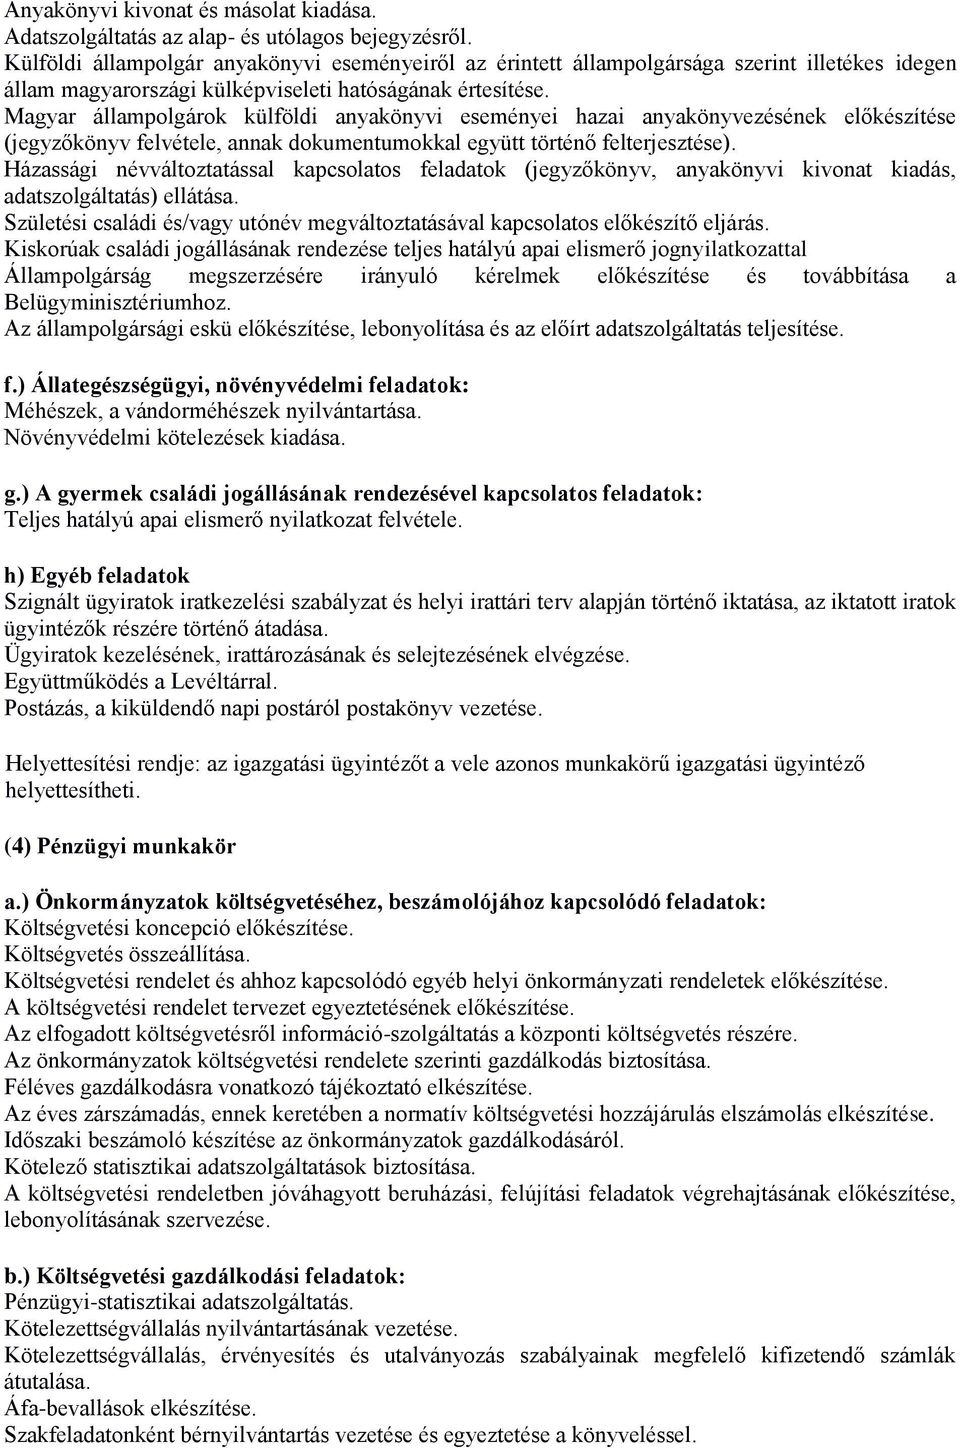 Magyar állampolgárok külföldi anyakönyvi eseményei hazai anyakönyvezésének előkészítése (jegyzőkönyv felvétele, annak dokumentumokkal együtt történő felterjesztése).